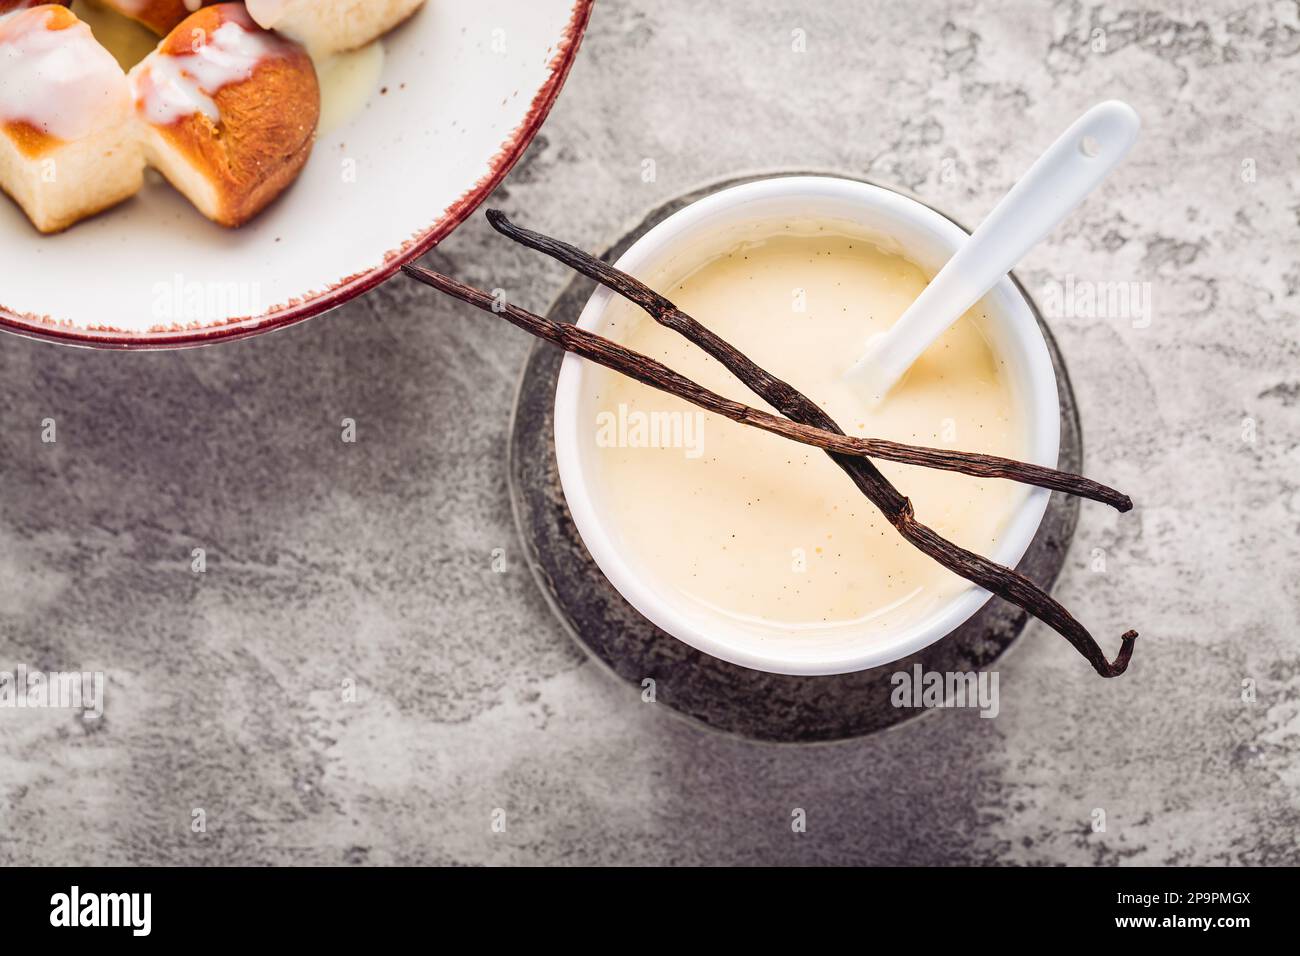 Buchteln, panini dolci a base di lievito con latte e burro, serviti con salsa alla vaniglia. Piatto tradizionale senza carne in Europa Foto Stock